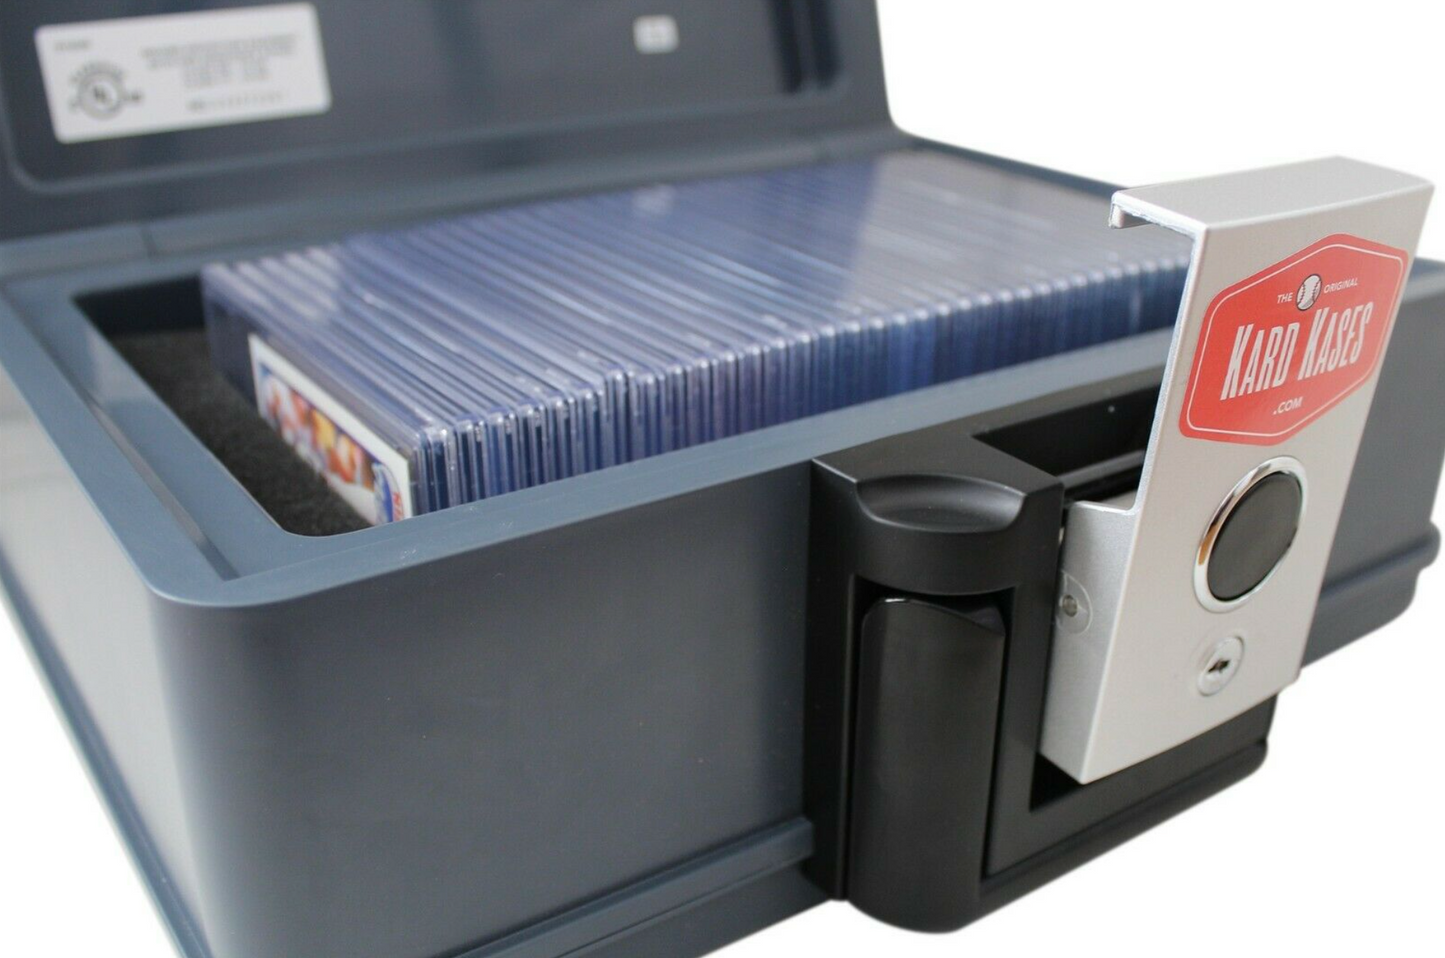 Fireproof Graded Card Slab Storage Box Case Holder Fits PSA - KardKases